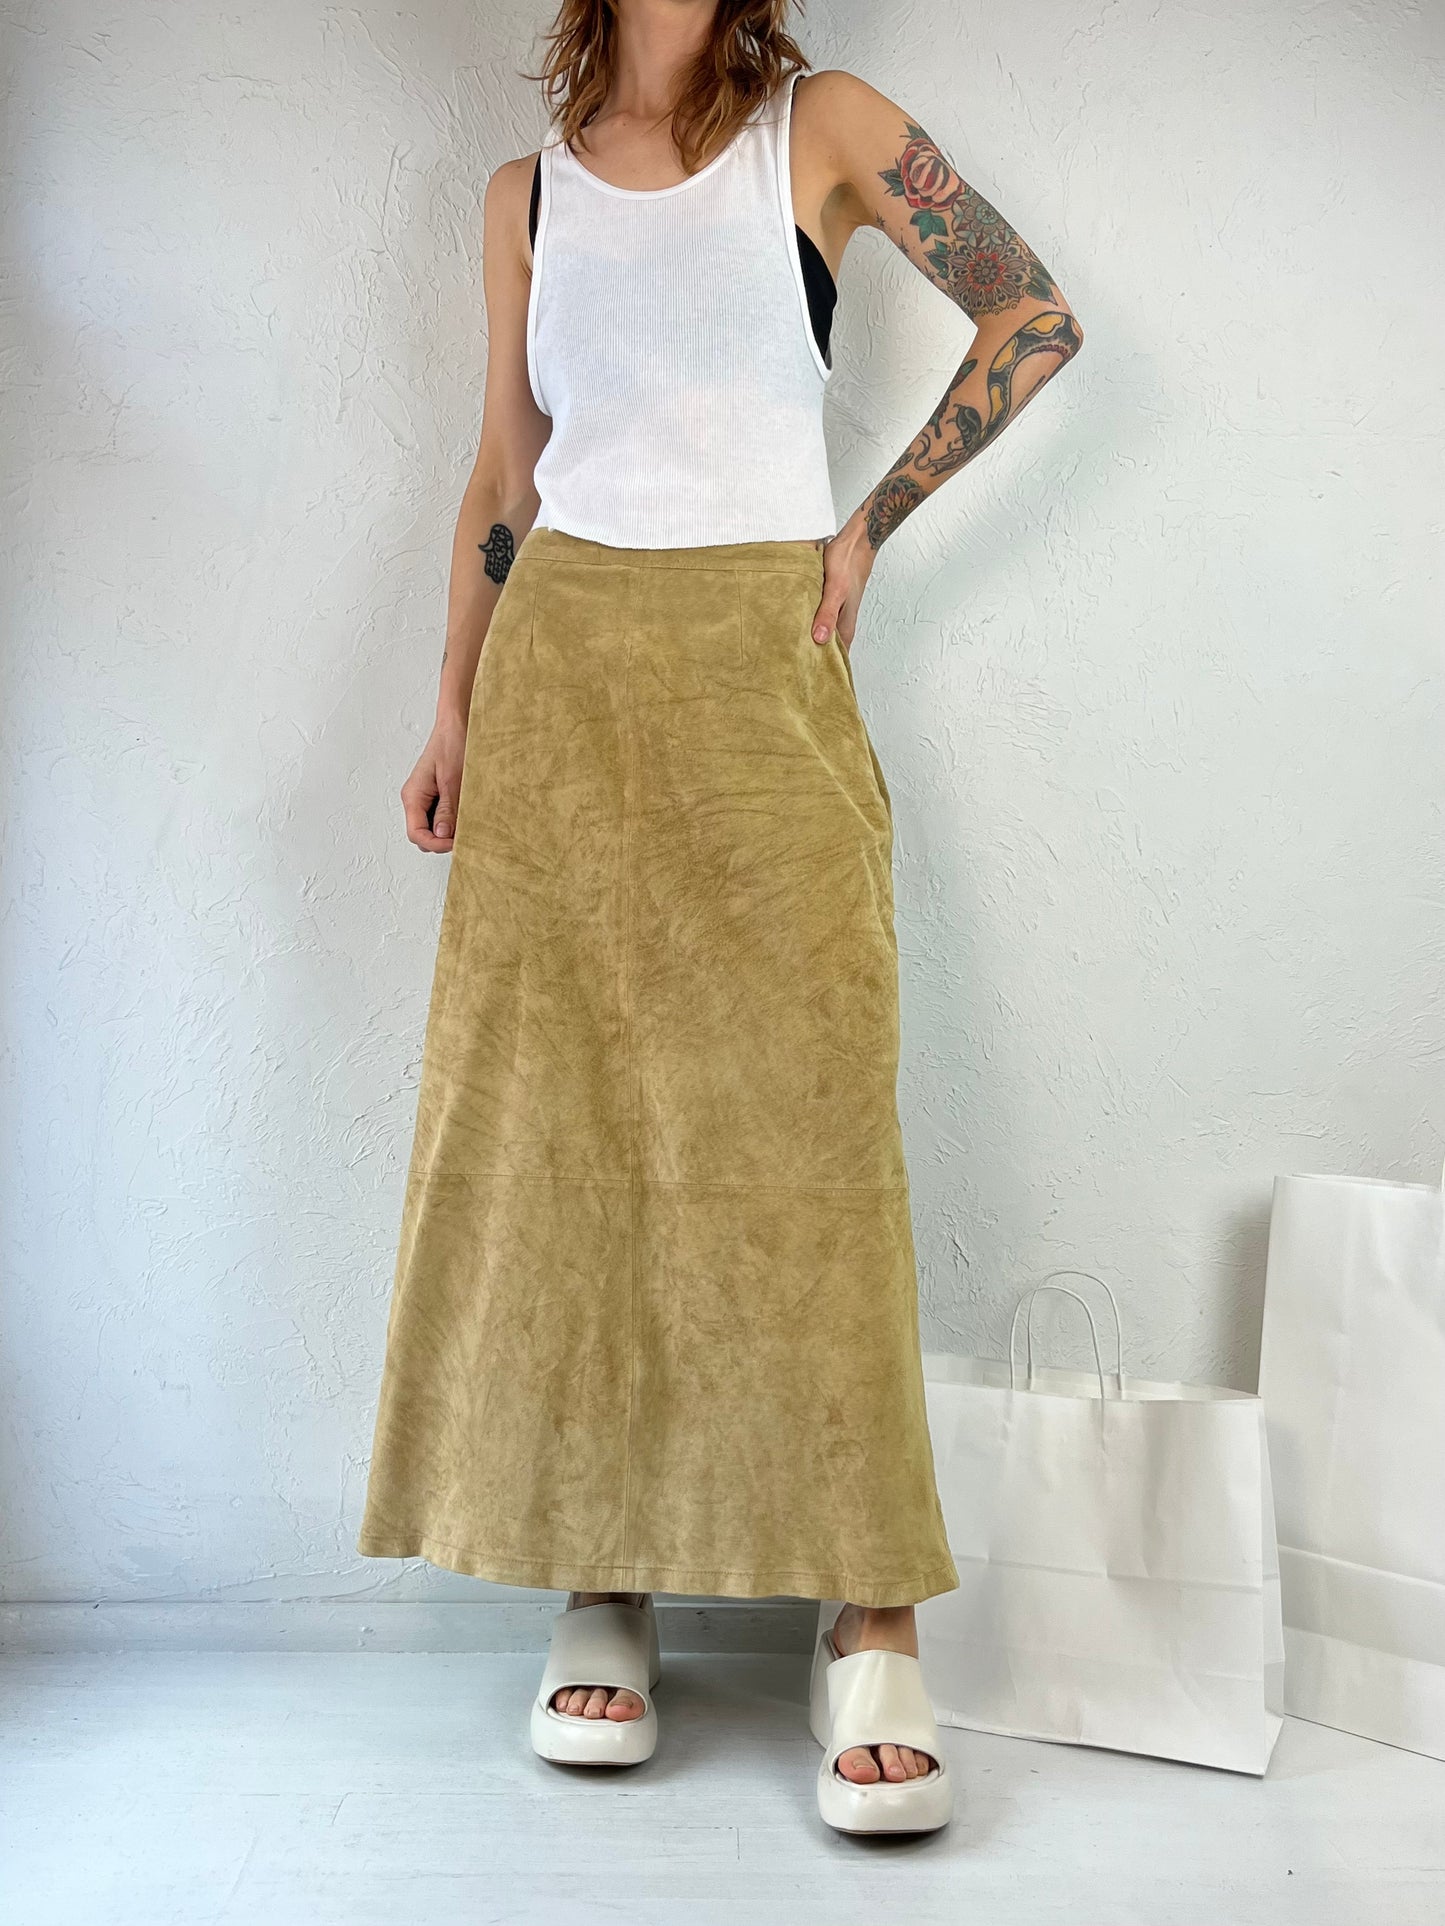 Y2K 'Stan Herman' Tan Suede Leather Maxi Skirt / Medium